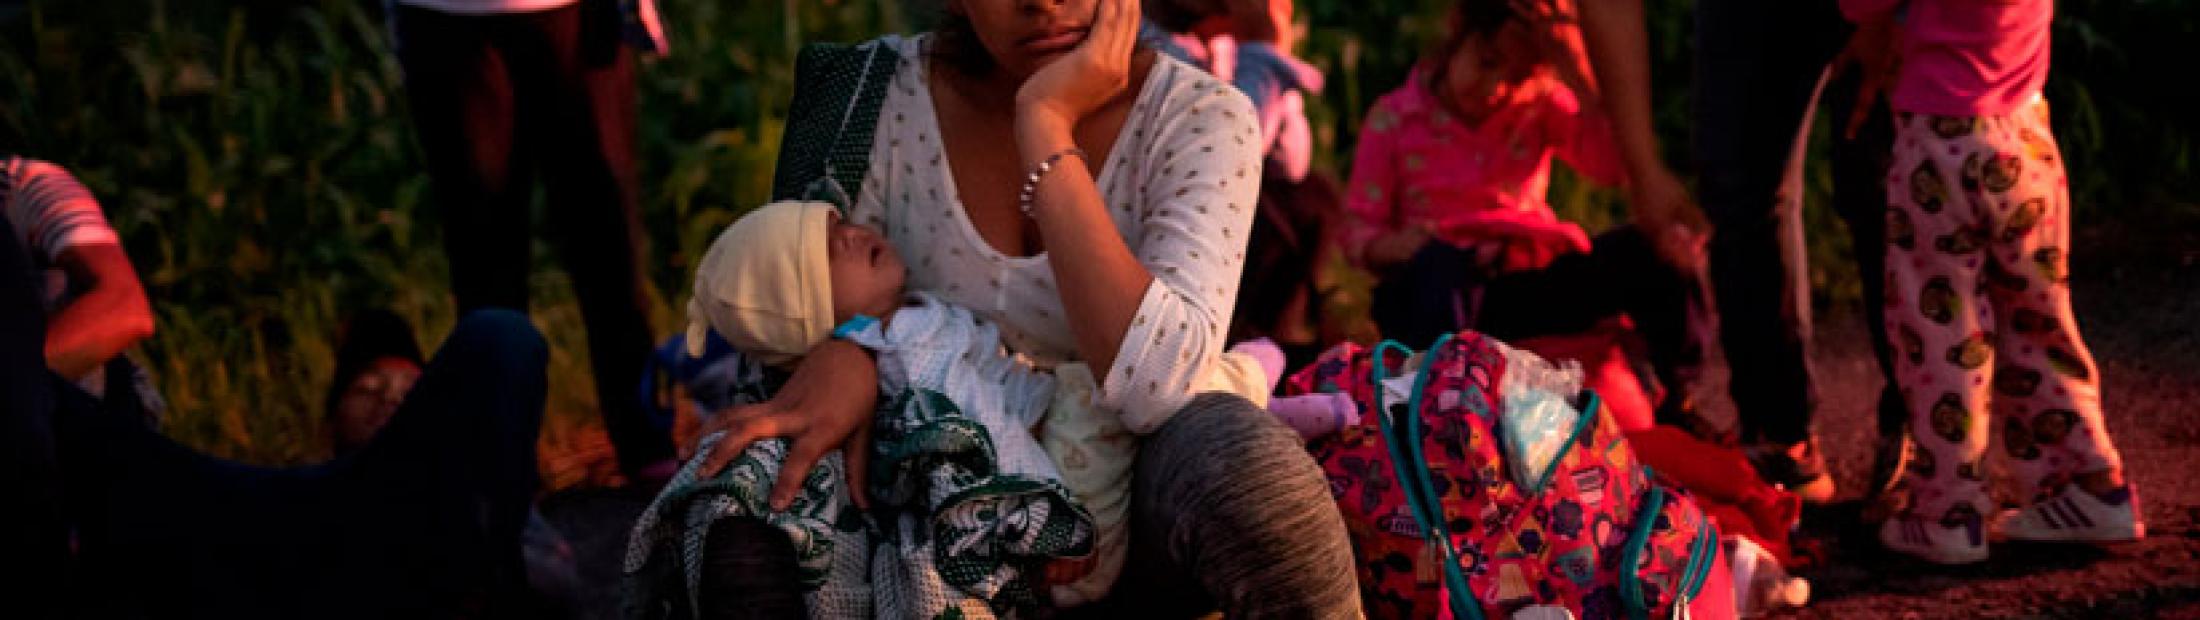 Refugiados en México, historias de lucha y resiliencia